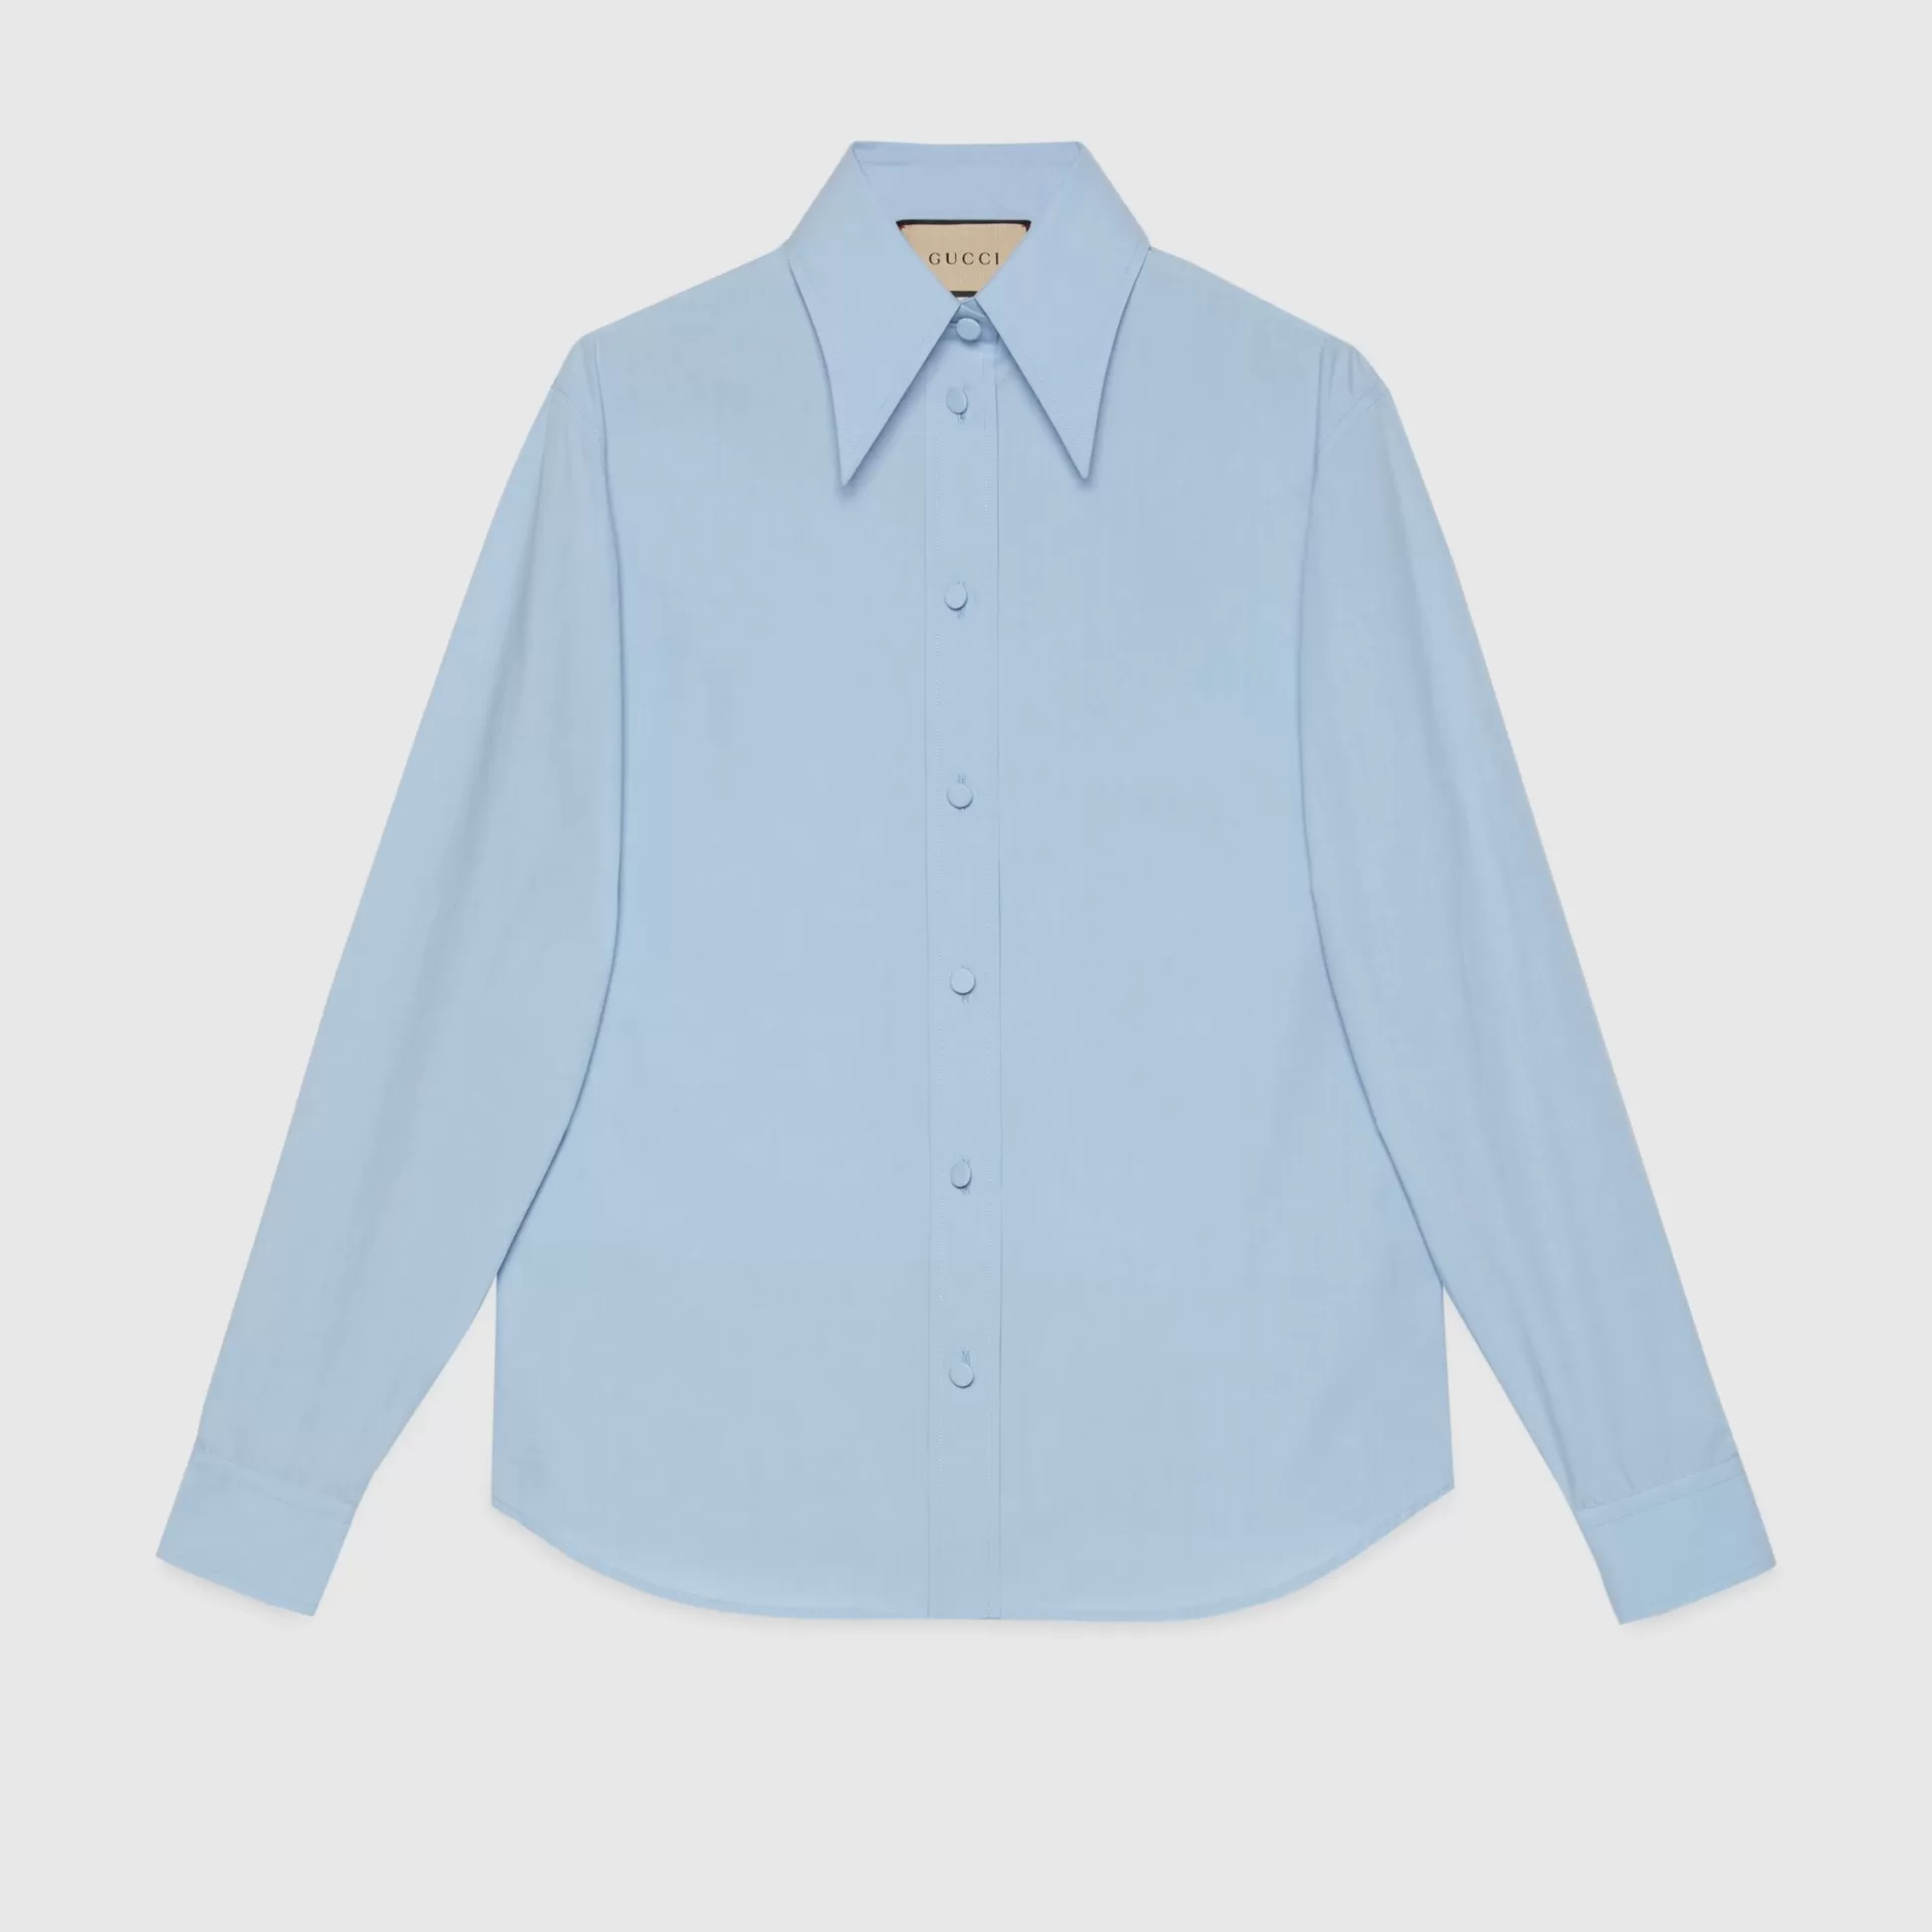 GUCCI Cotton Poplin Shirt-Women Tops & Shirts